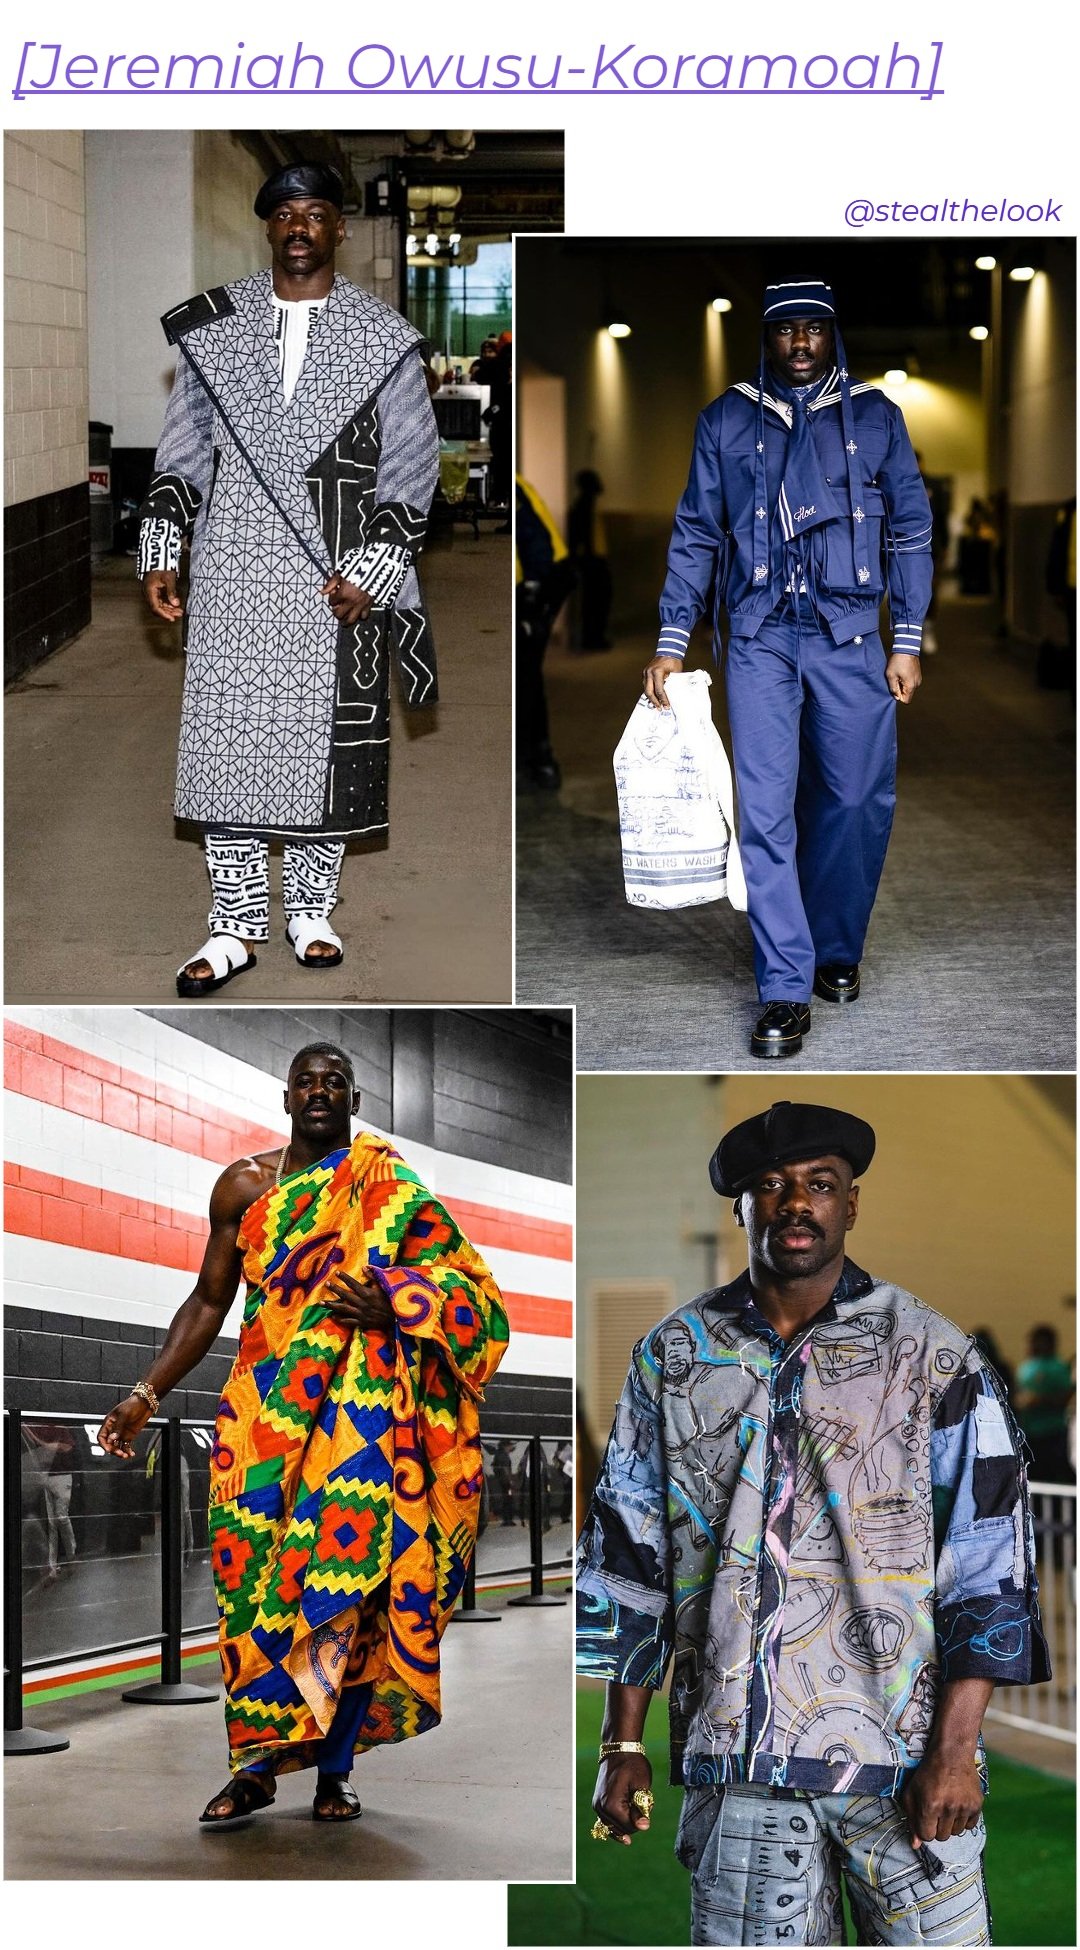 Jeremiah Owusu-Koramoah - roupas diversas - NFL - inverno - colagem de imagens - https://stealthelook.com.br